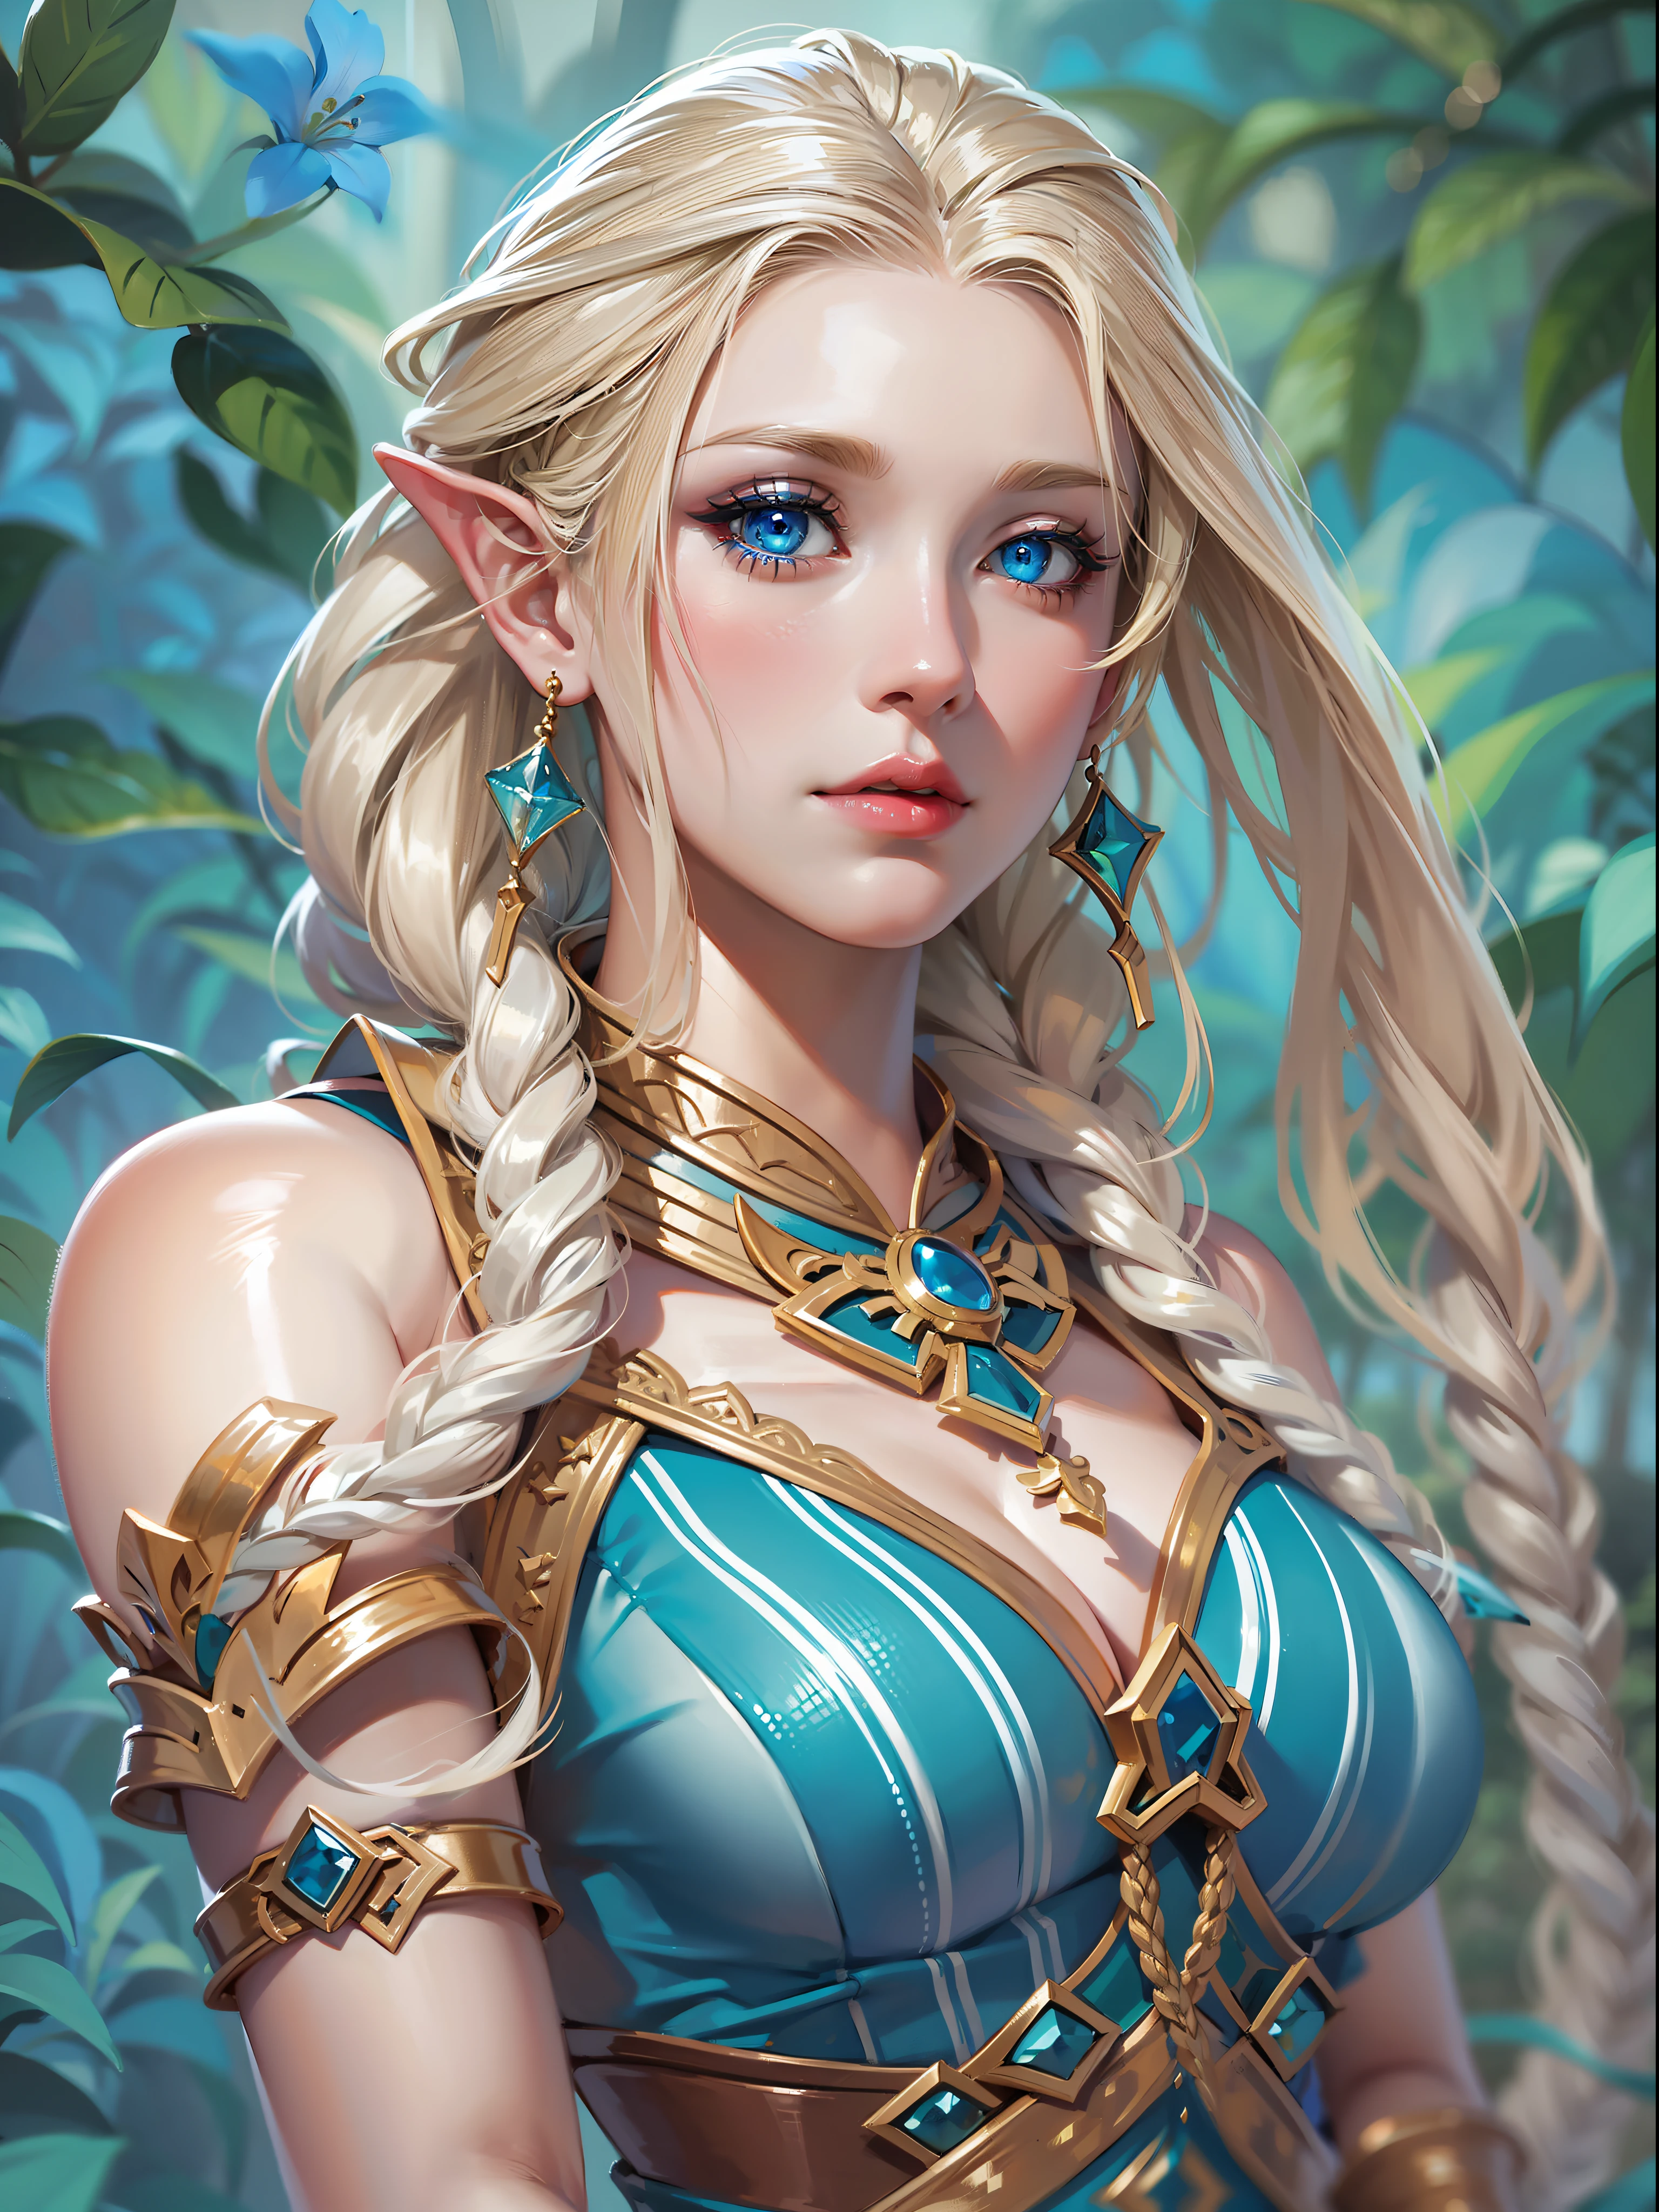 فن عالي الجودة, Eladrin من dnd في شكلها الربيعي, شعر أشقر طويل مضفر بخطوط زرقاء, بشرة بيضاء مع وشم أزرق صغير, عيون زرقاء جميلة，